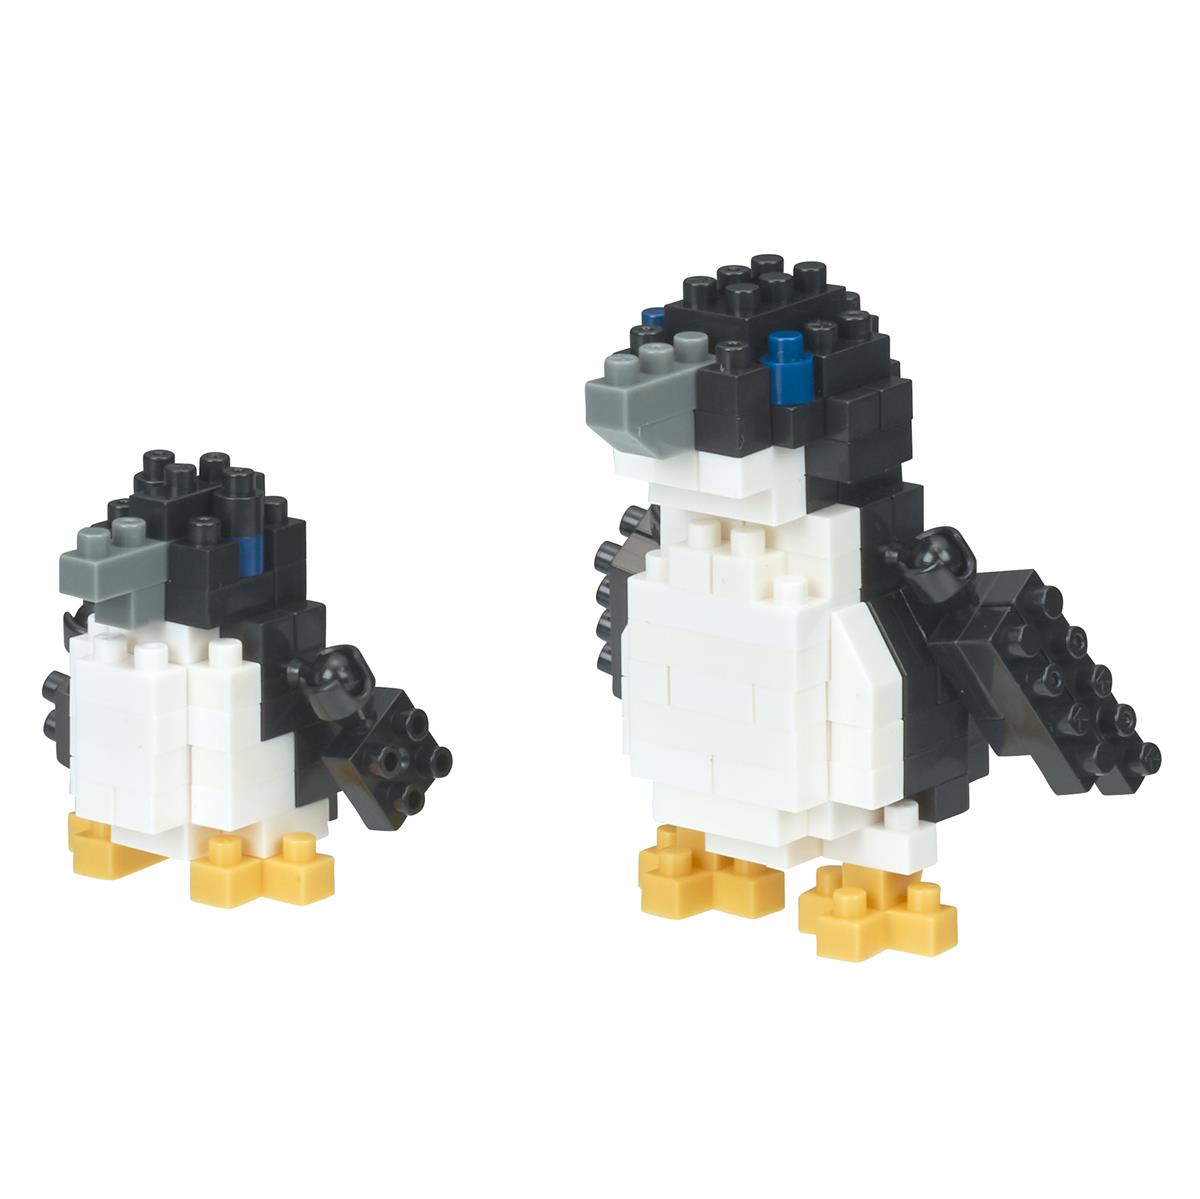 NBC-310 - Little penguins